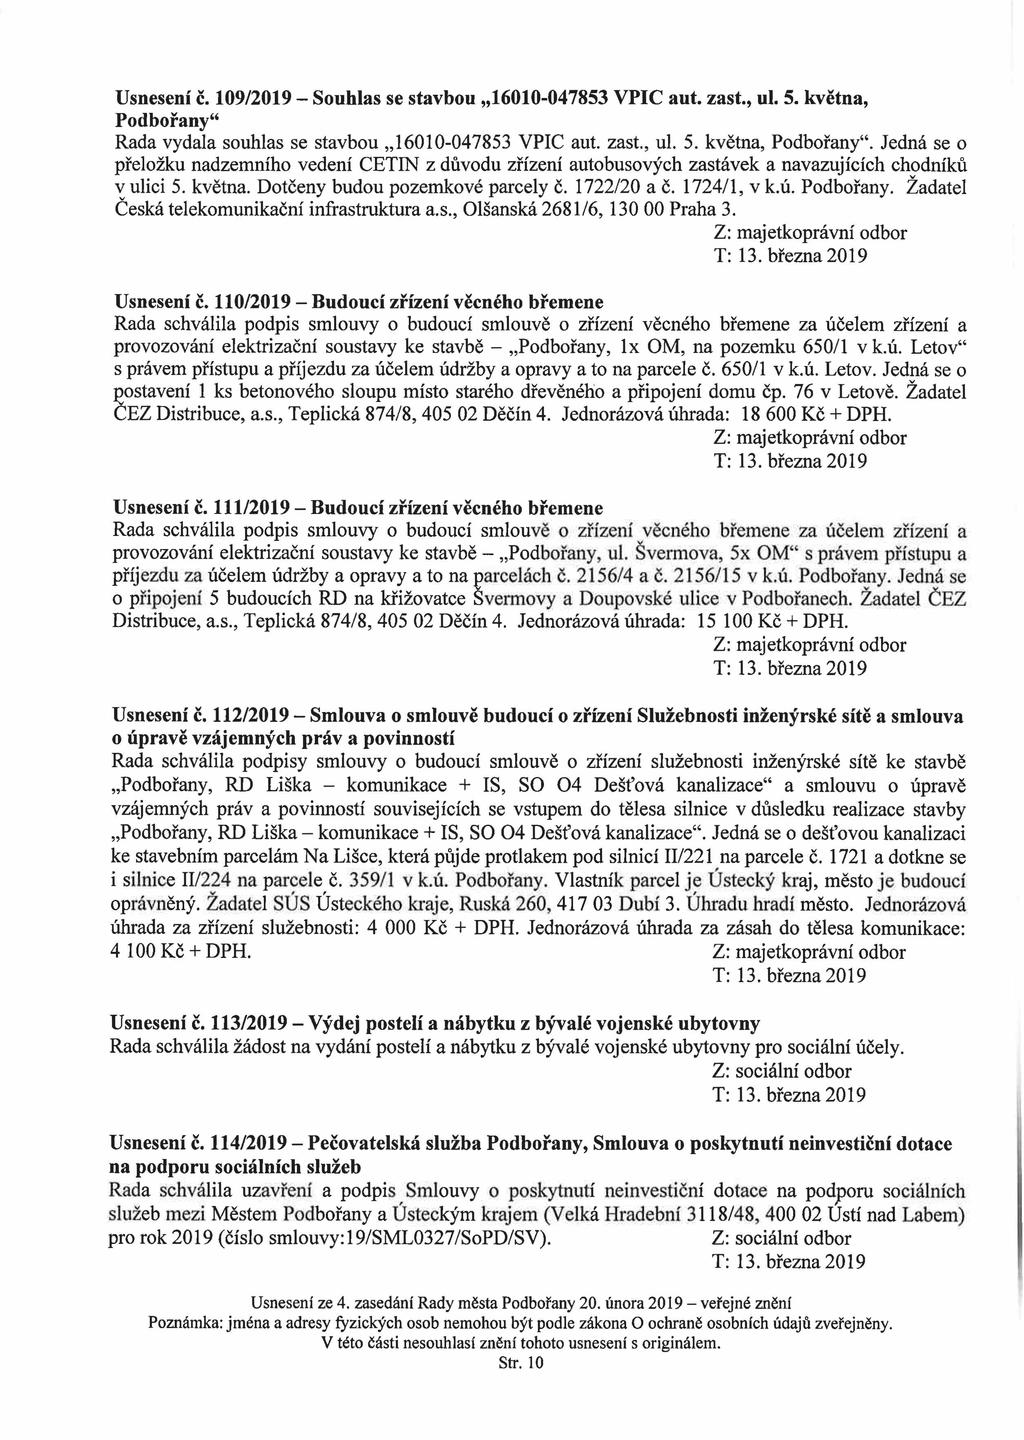 Usnesení č. 109/2019 - Souhlas se stavbou 16010-047853 VPIC aut. zast., ul. 5. května, Podbořany44 